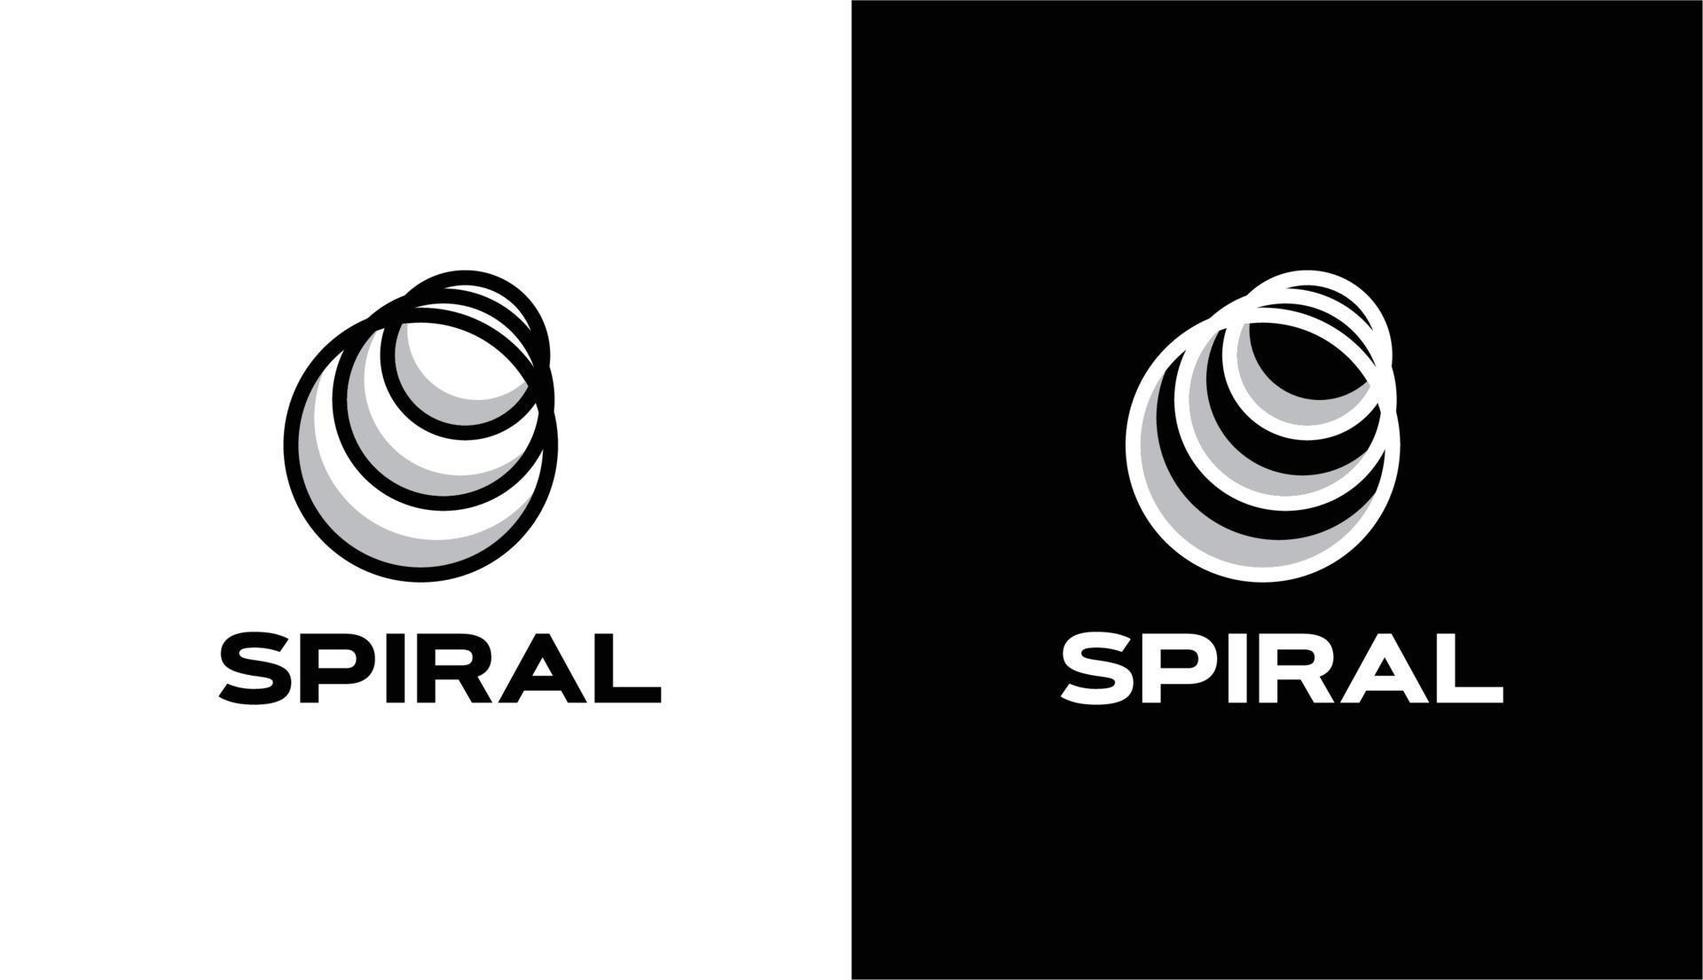 logo minimaliste futuriste, spirale circulaire adaptée aux marques automobiles, robotiques et de construction vecteur